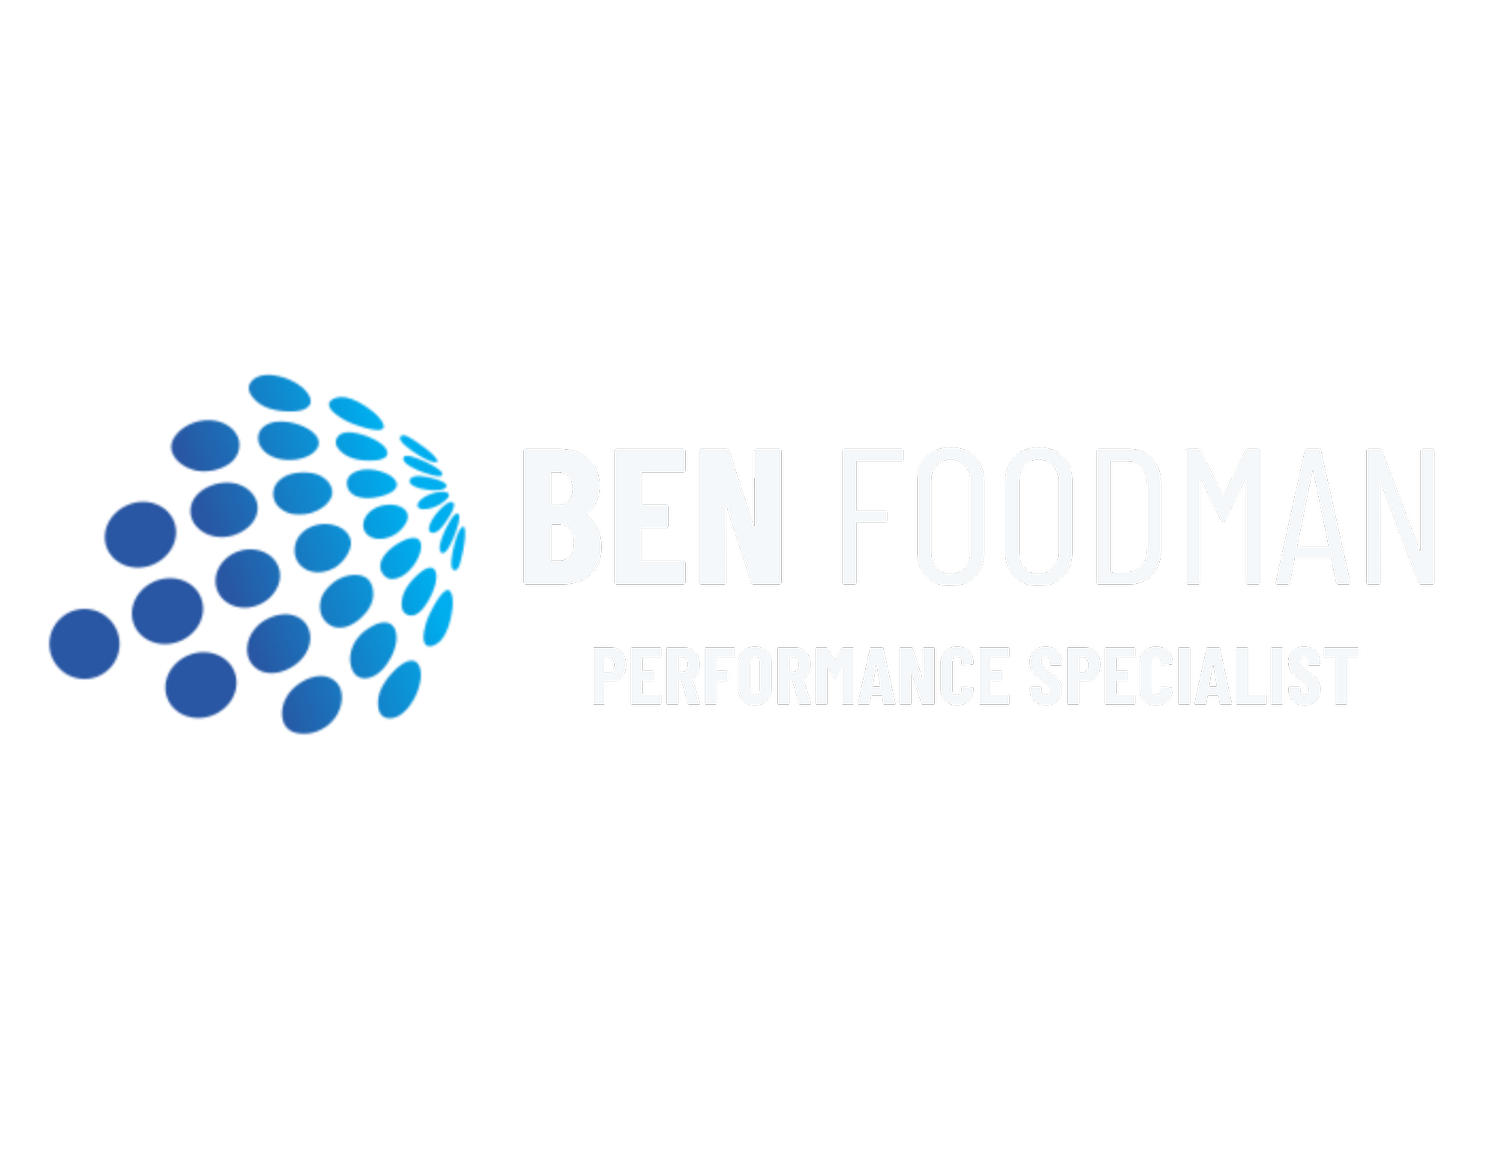 Ben Foodman